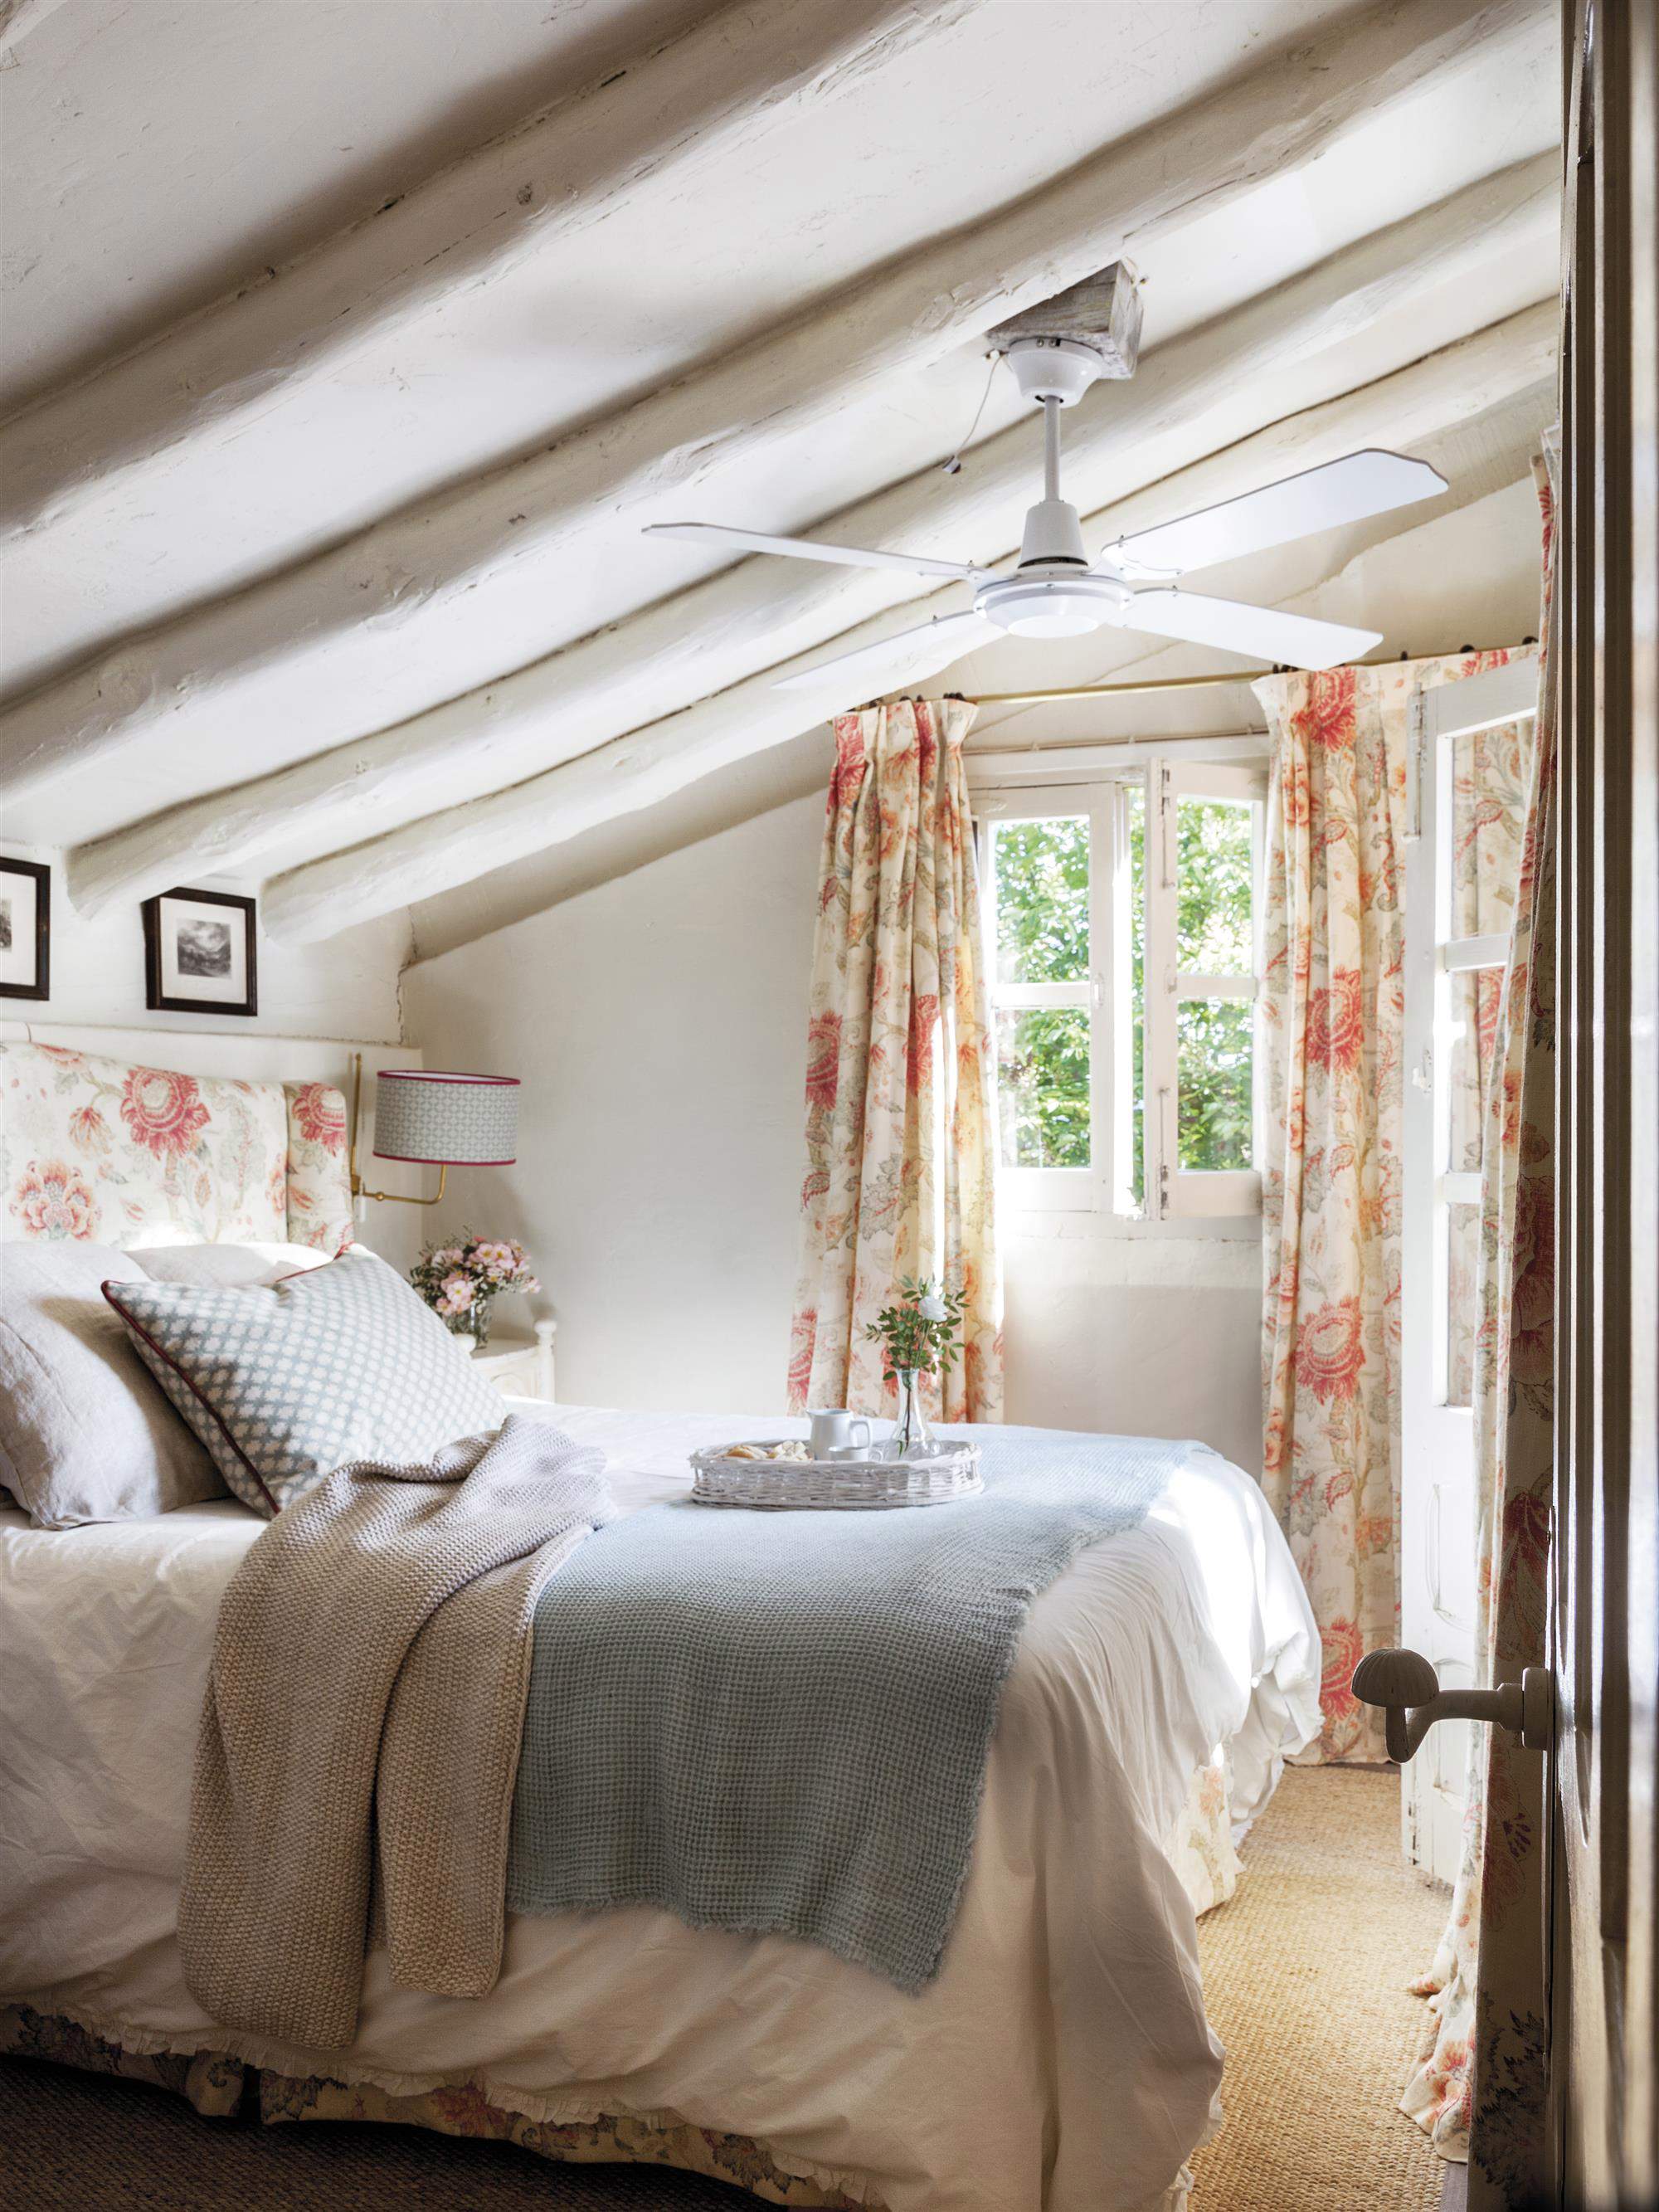 Dormitorio abuhardillado con vigas lacadas en blanco y cabecero y cortinas de flores